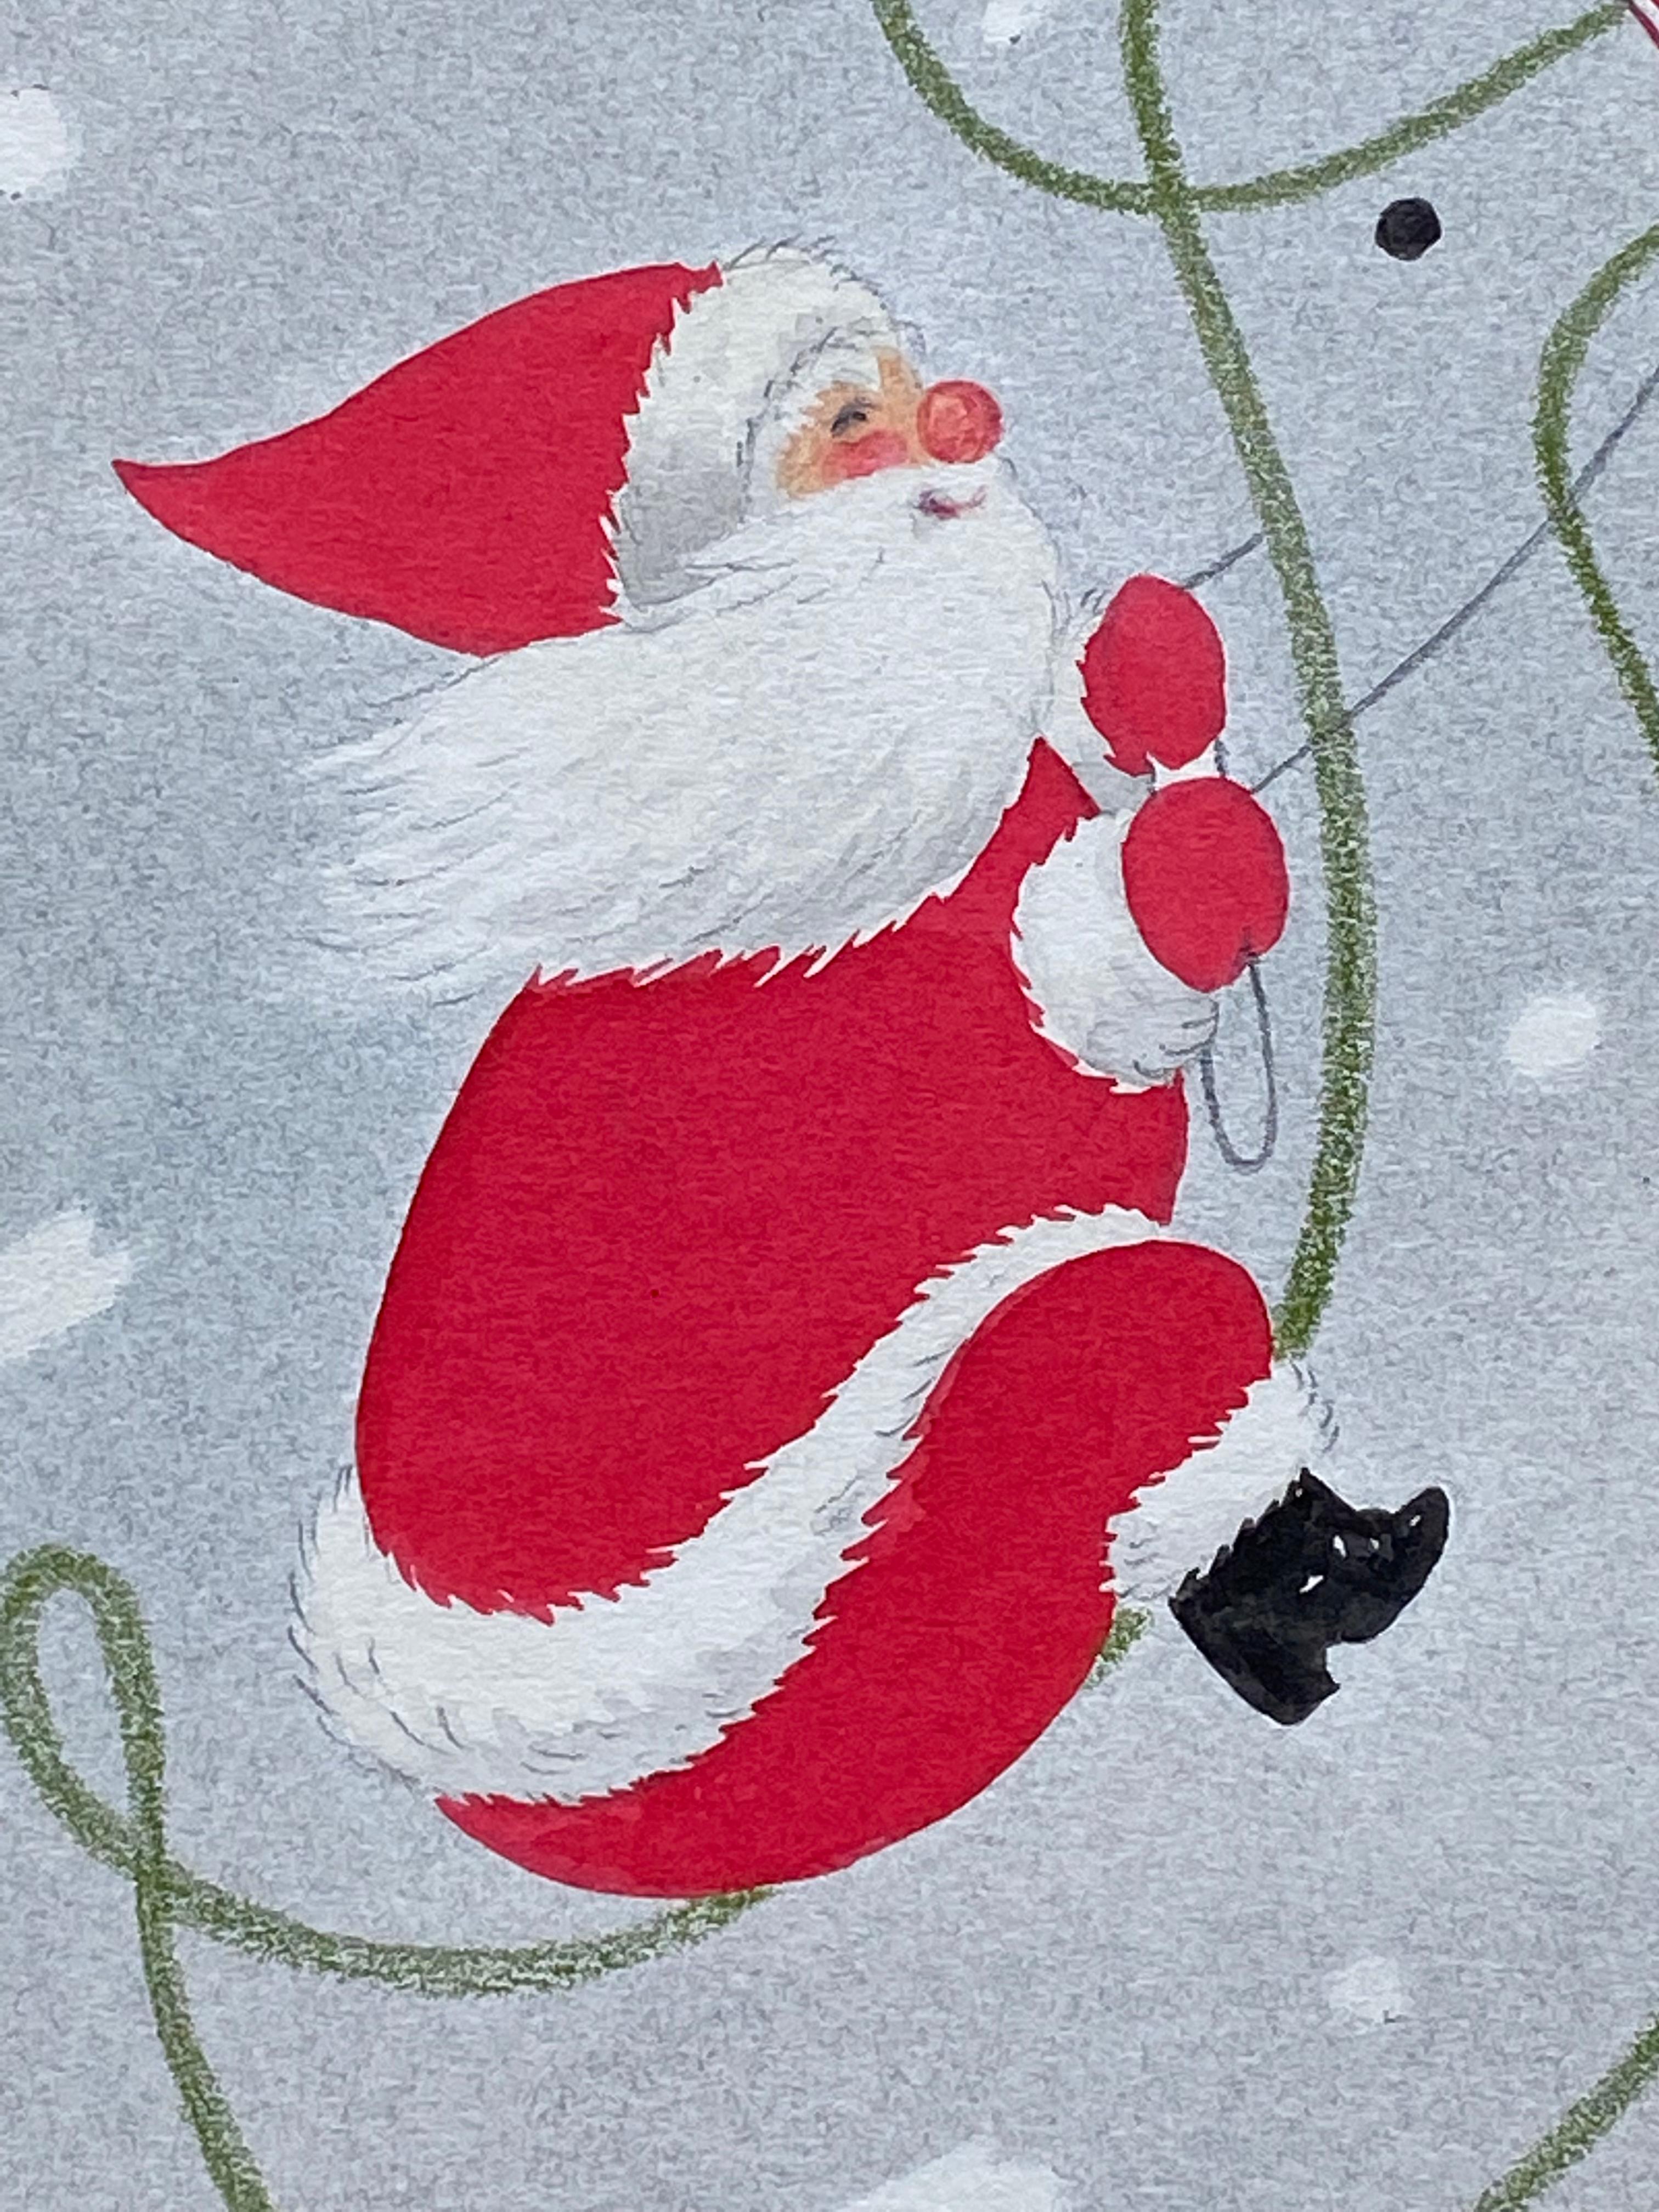 “Santa on his Reindeer” - Art by Unknown